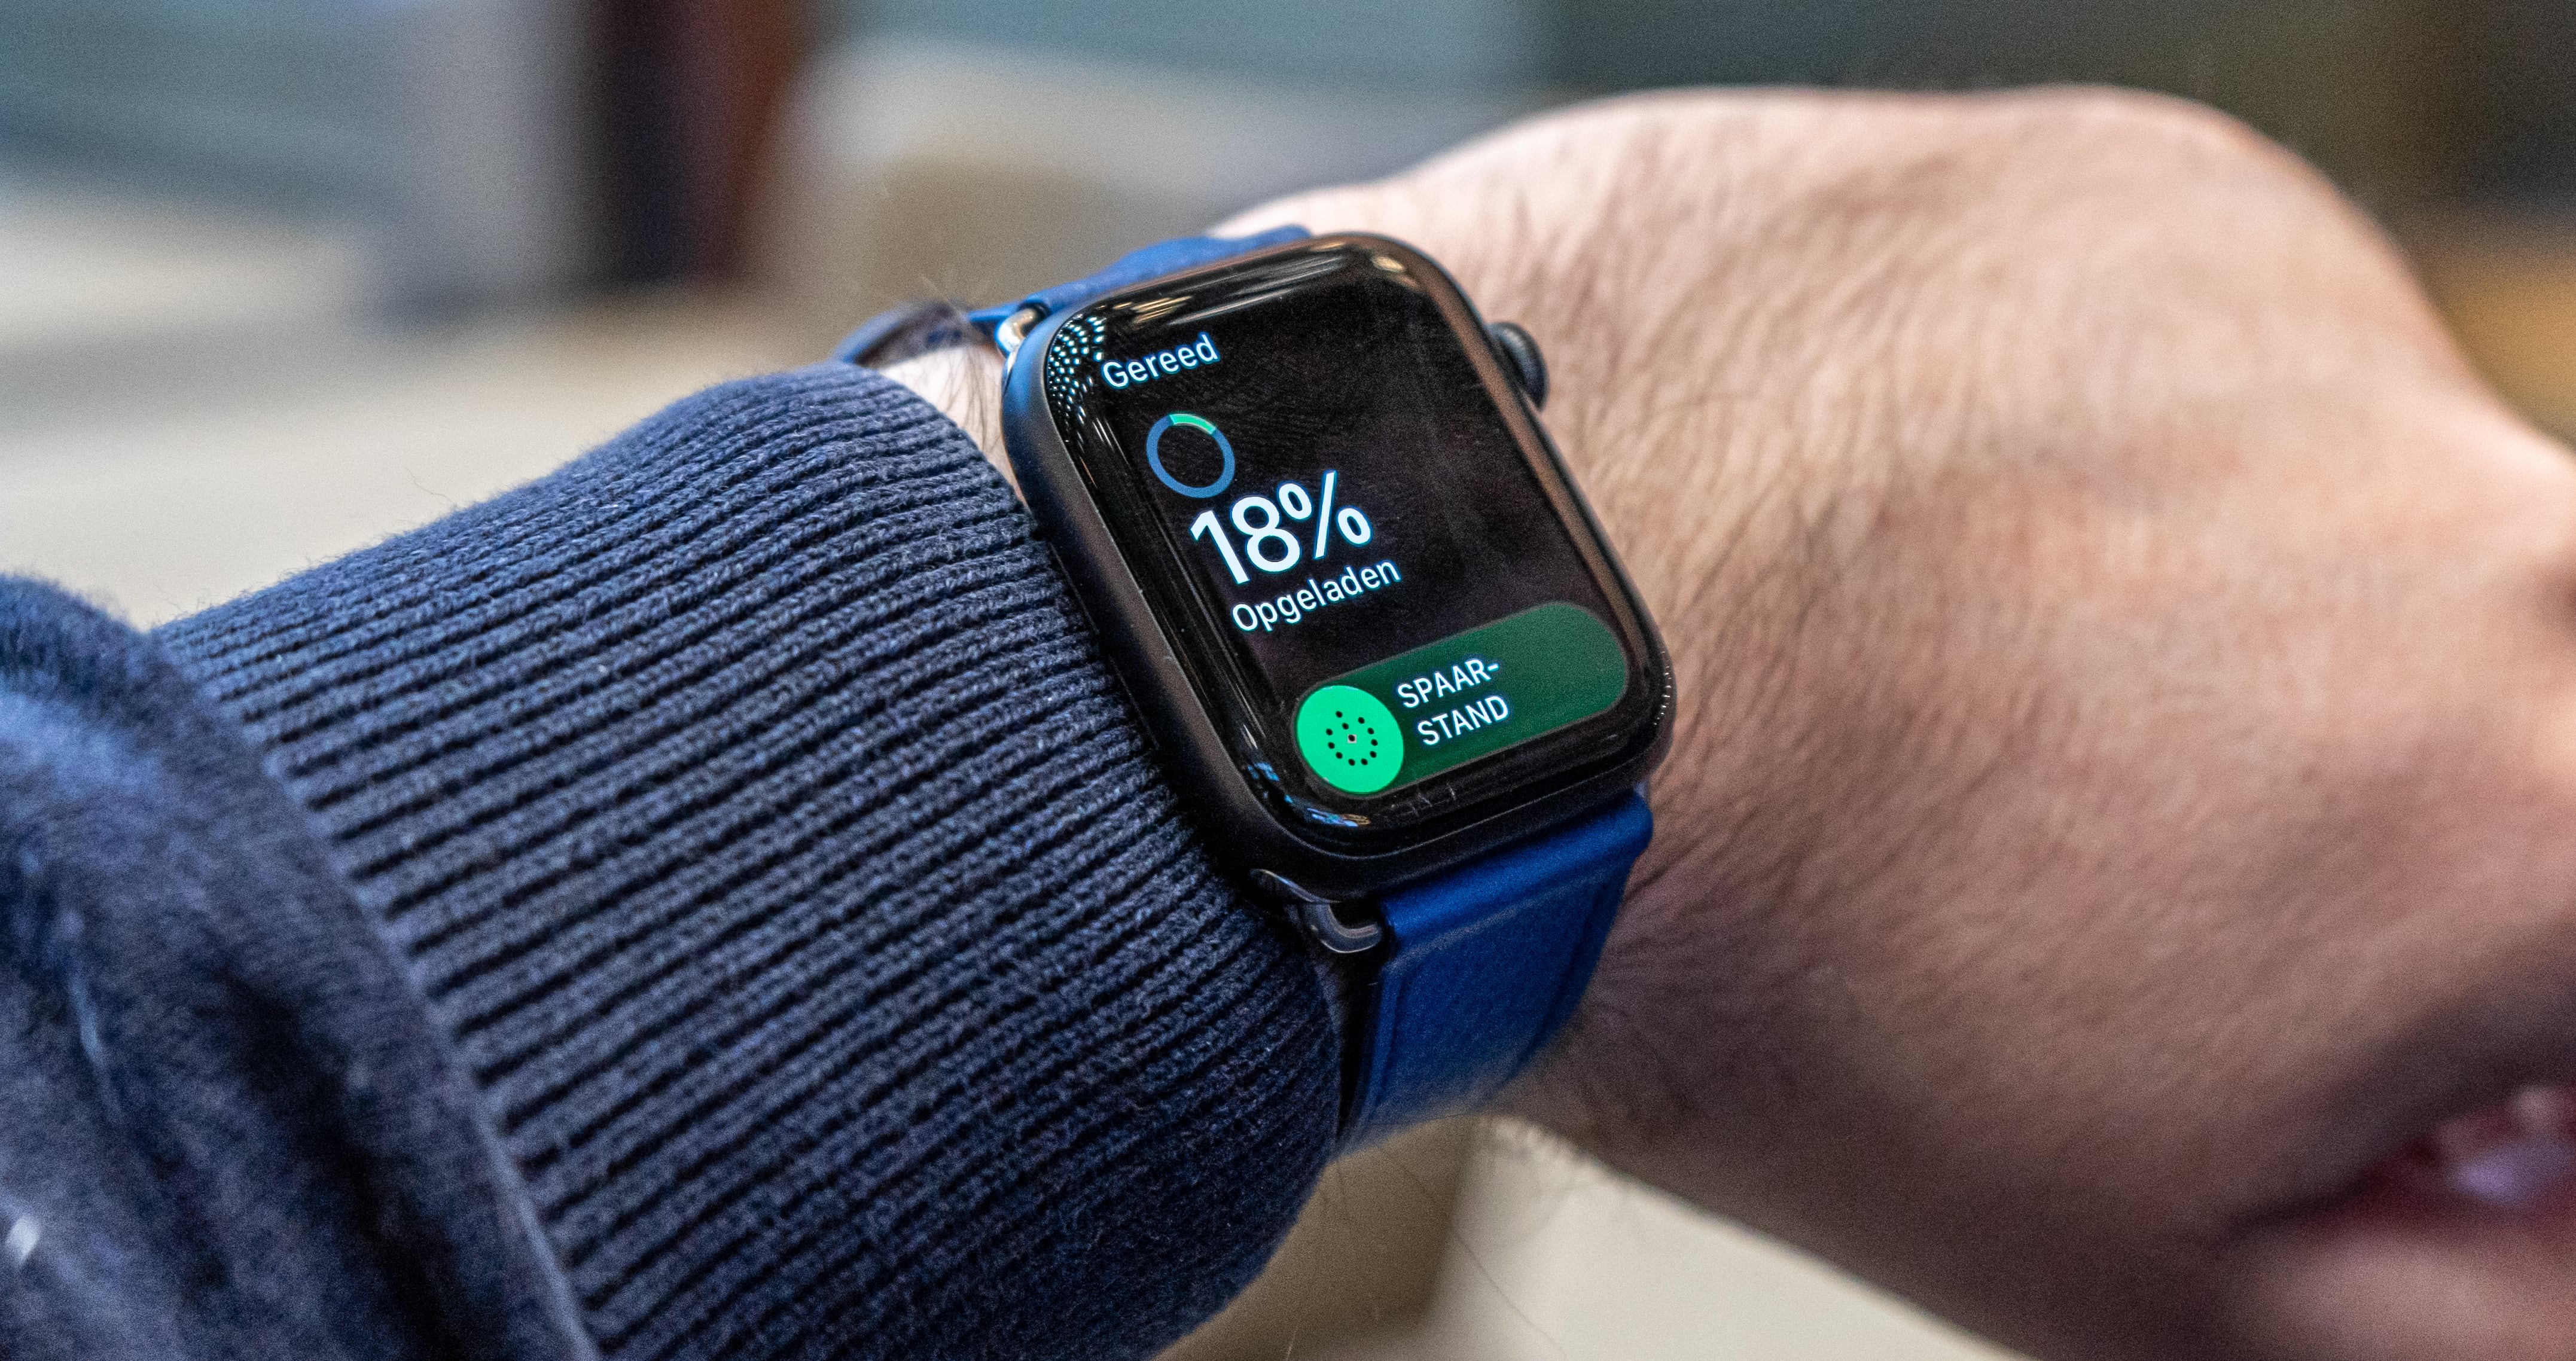 الأخبار 15 سبتمبر 2020
Apple Watch SE وفقًا لـ Gurman مع تصميم ومواصفات Series 5